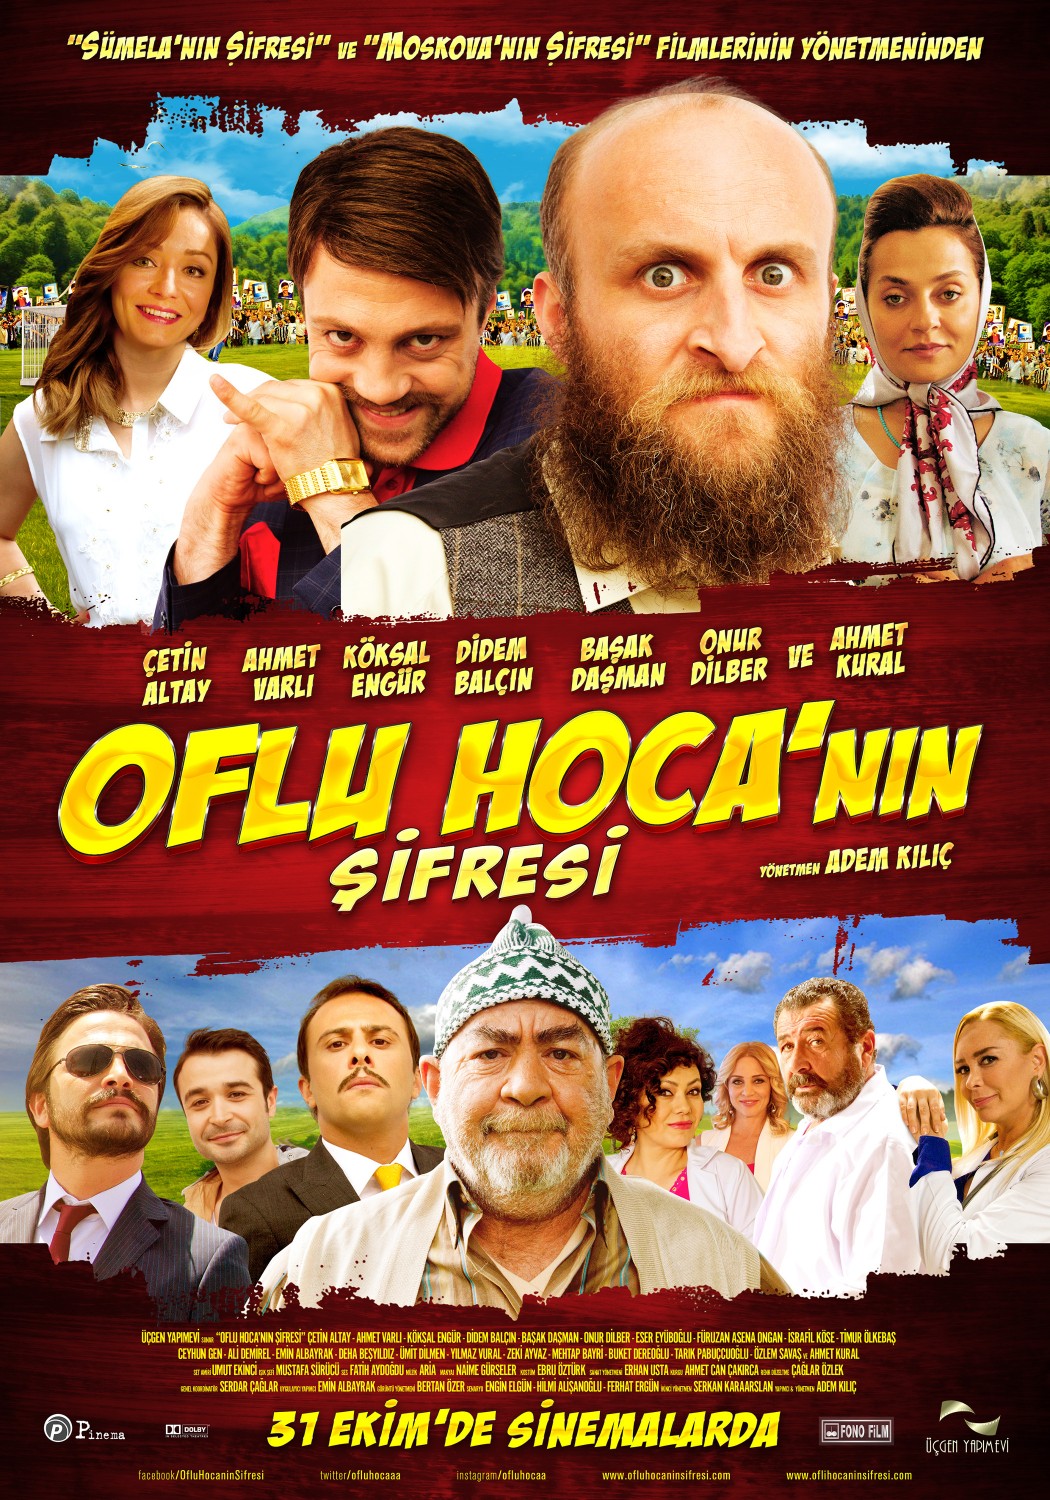 Extra Large Movie Poster Image for Oflu Hoca'nin Sifresi 